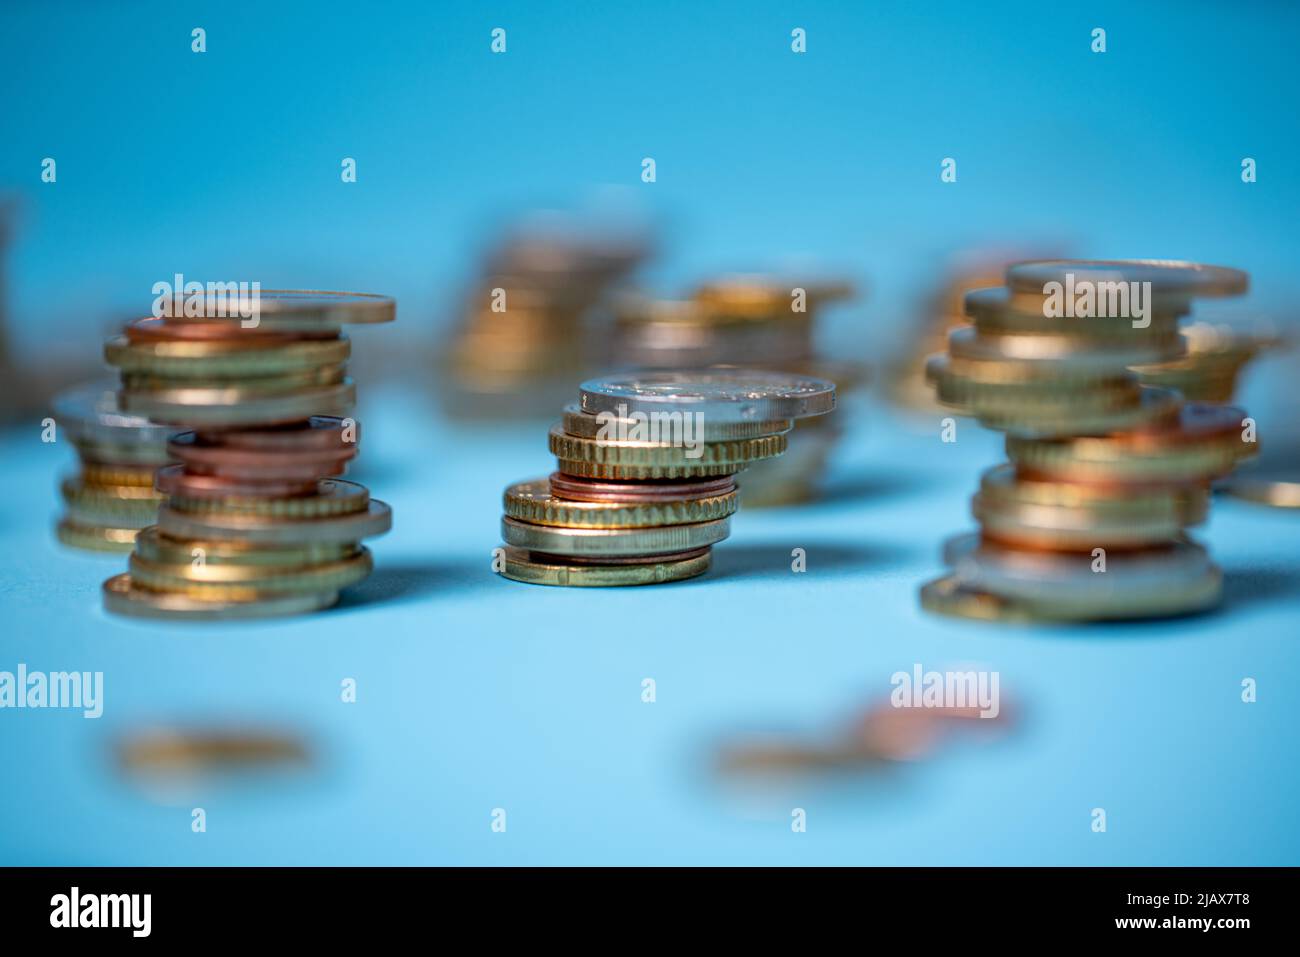 Auf blauem Hintergrund stapelten sich Münzen. Euro-Münzen aus der Europäischen Union. Geld und Bargeld stapelten sich bis zu Türmen Stockfoto